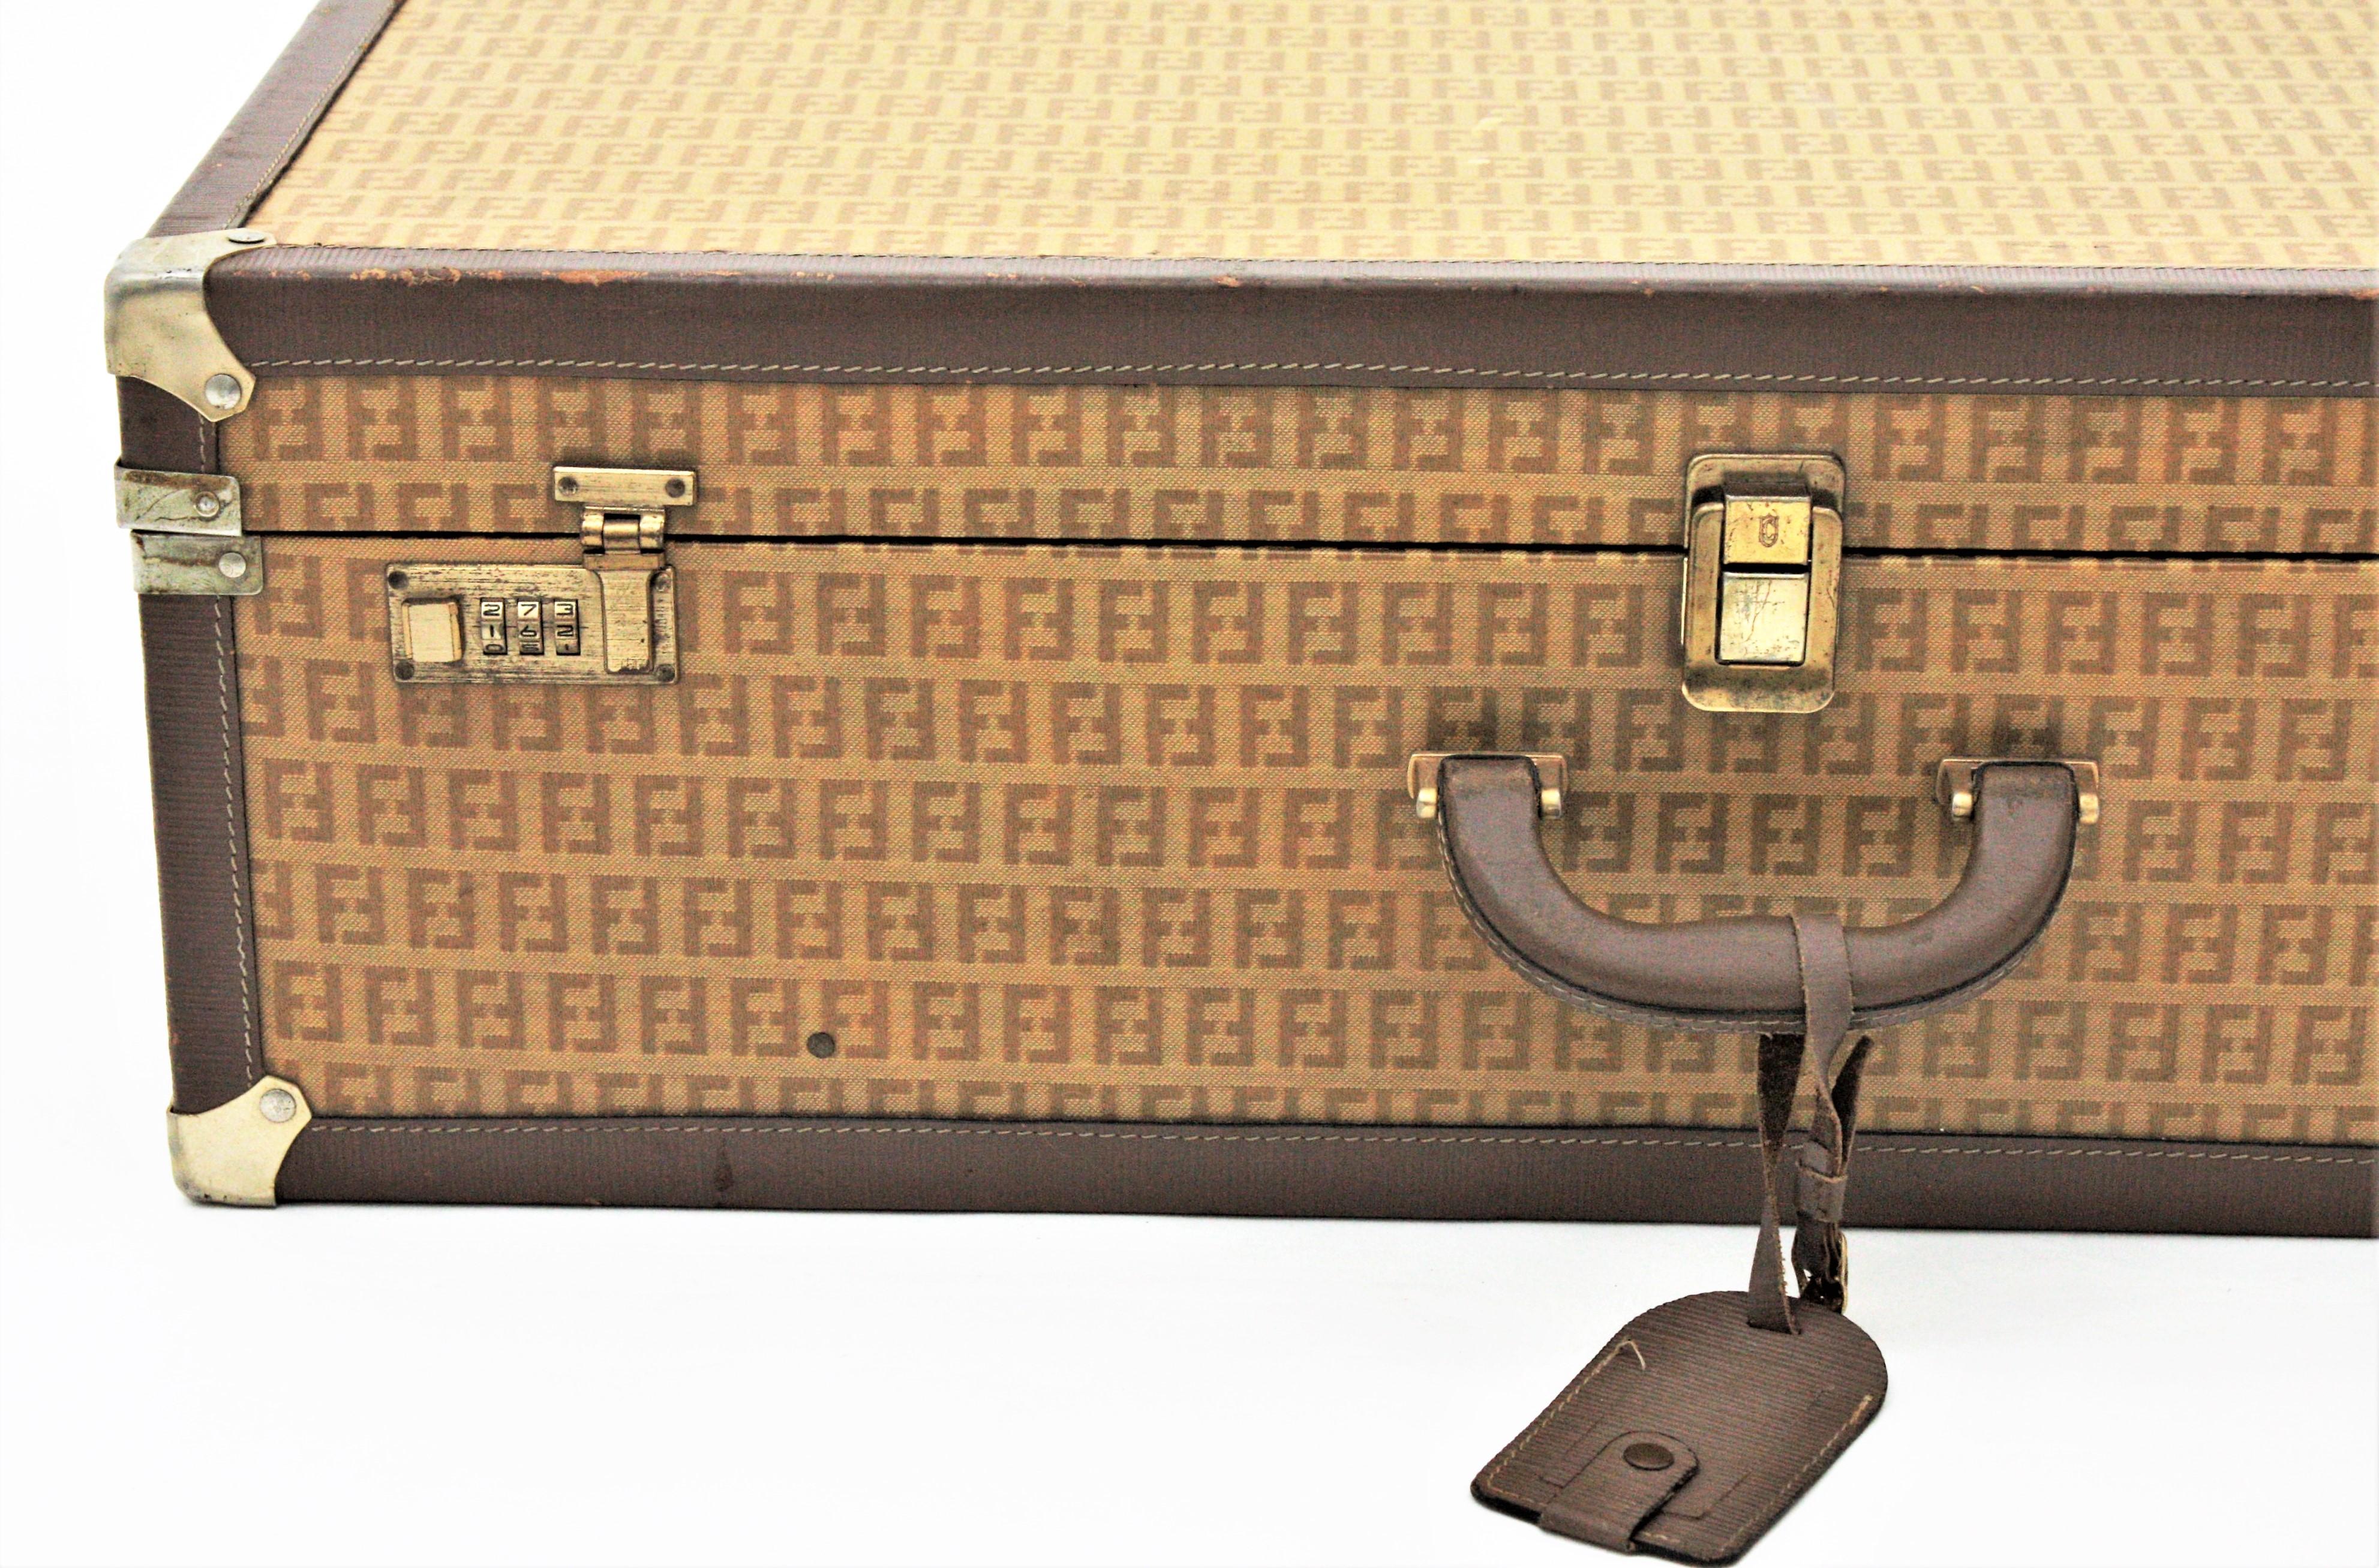 Fendi Zucca Pattern Epi Leather Vintage Luxury Trunk Suitcase, 1970s
Grande valise rigide Fendi Zucca monogrammée. Le bagage à motif Zucca a été conçu par le créateur de mode italien Fendi. Italie 1970
Cette pièce rigide peut également être utilisée